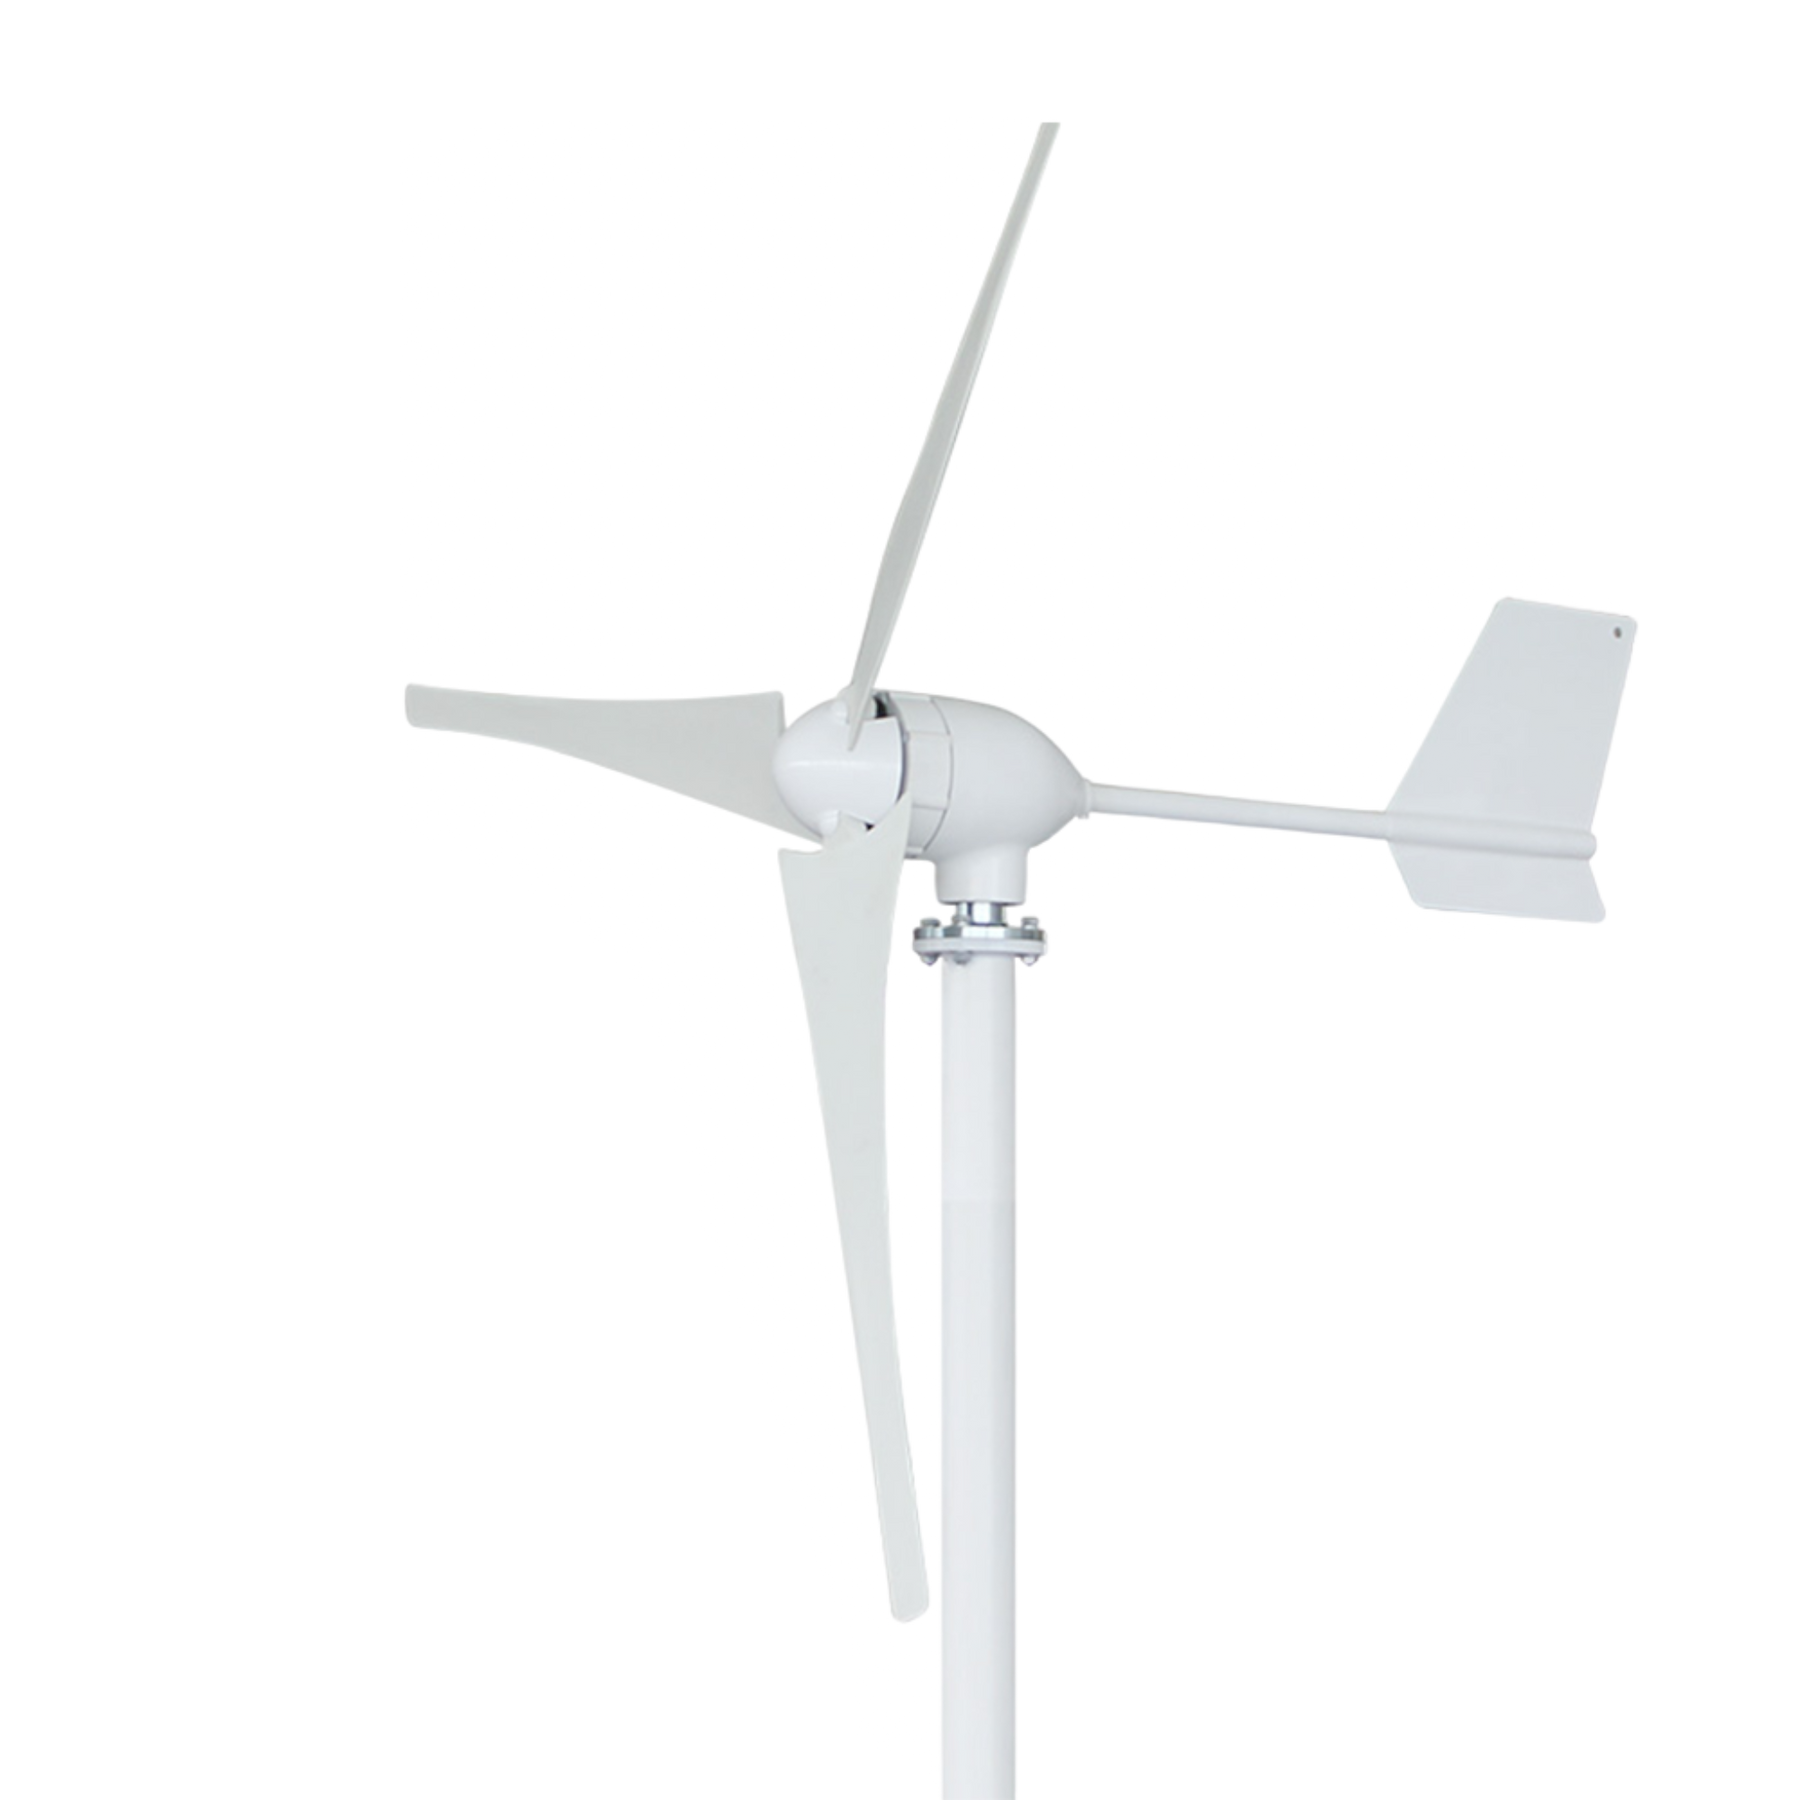 Turbina eoliana 48V, putere 1000W